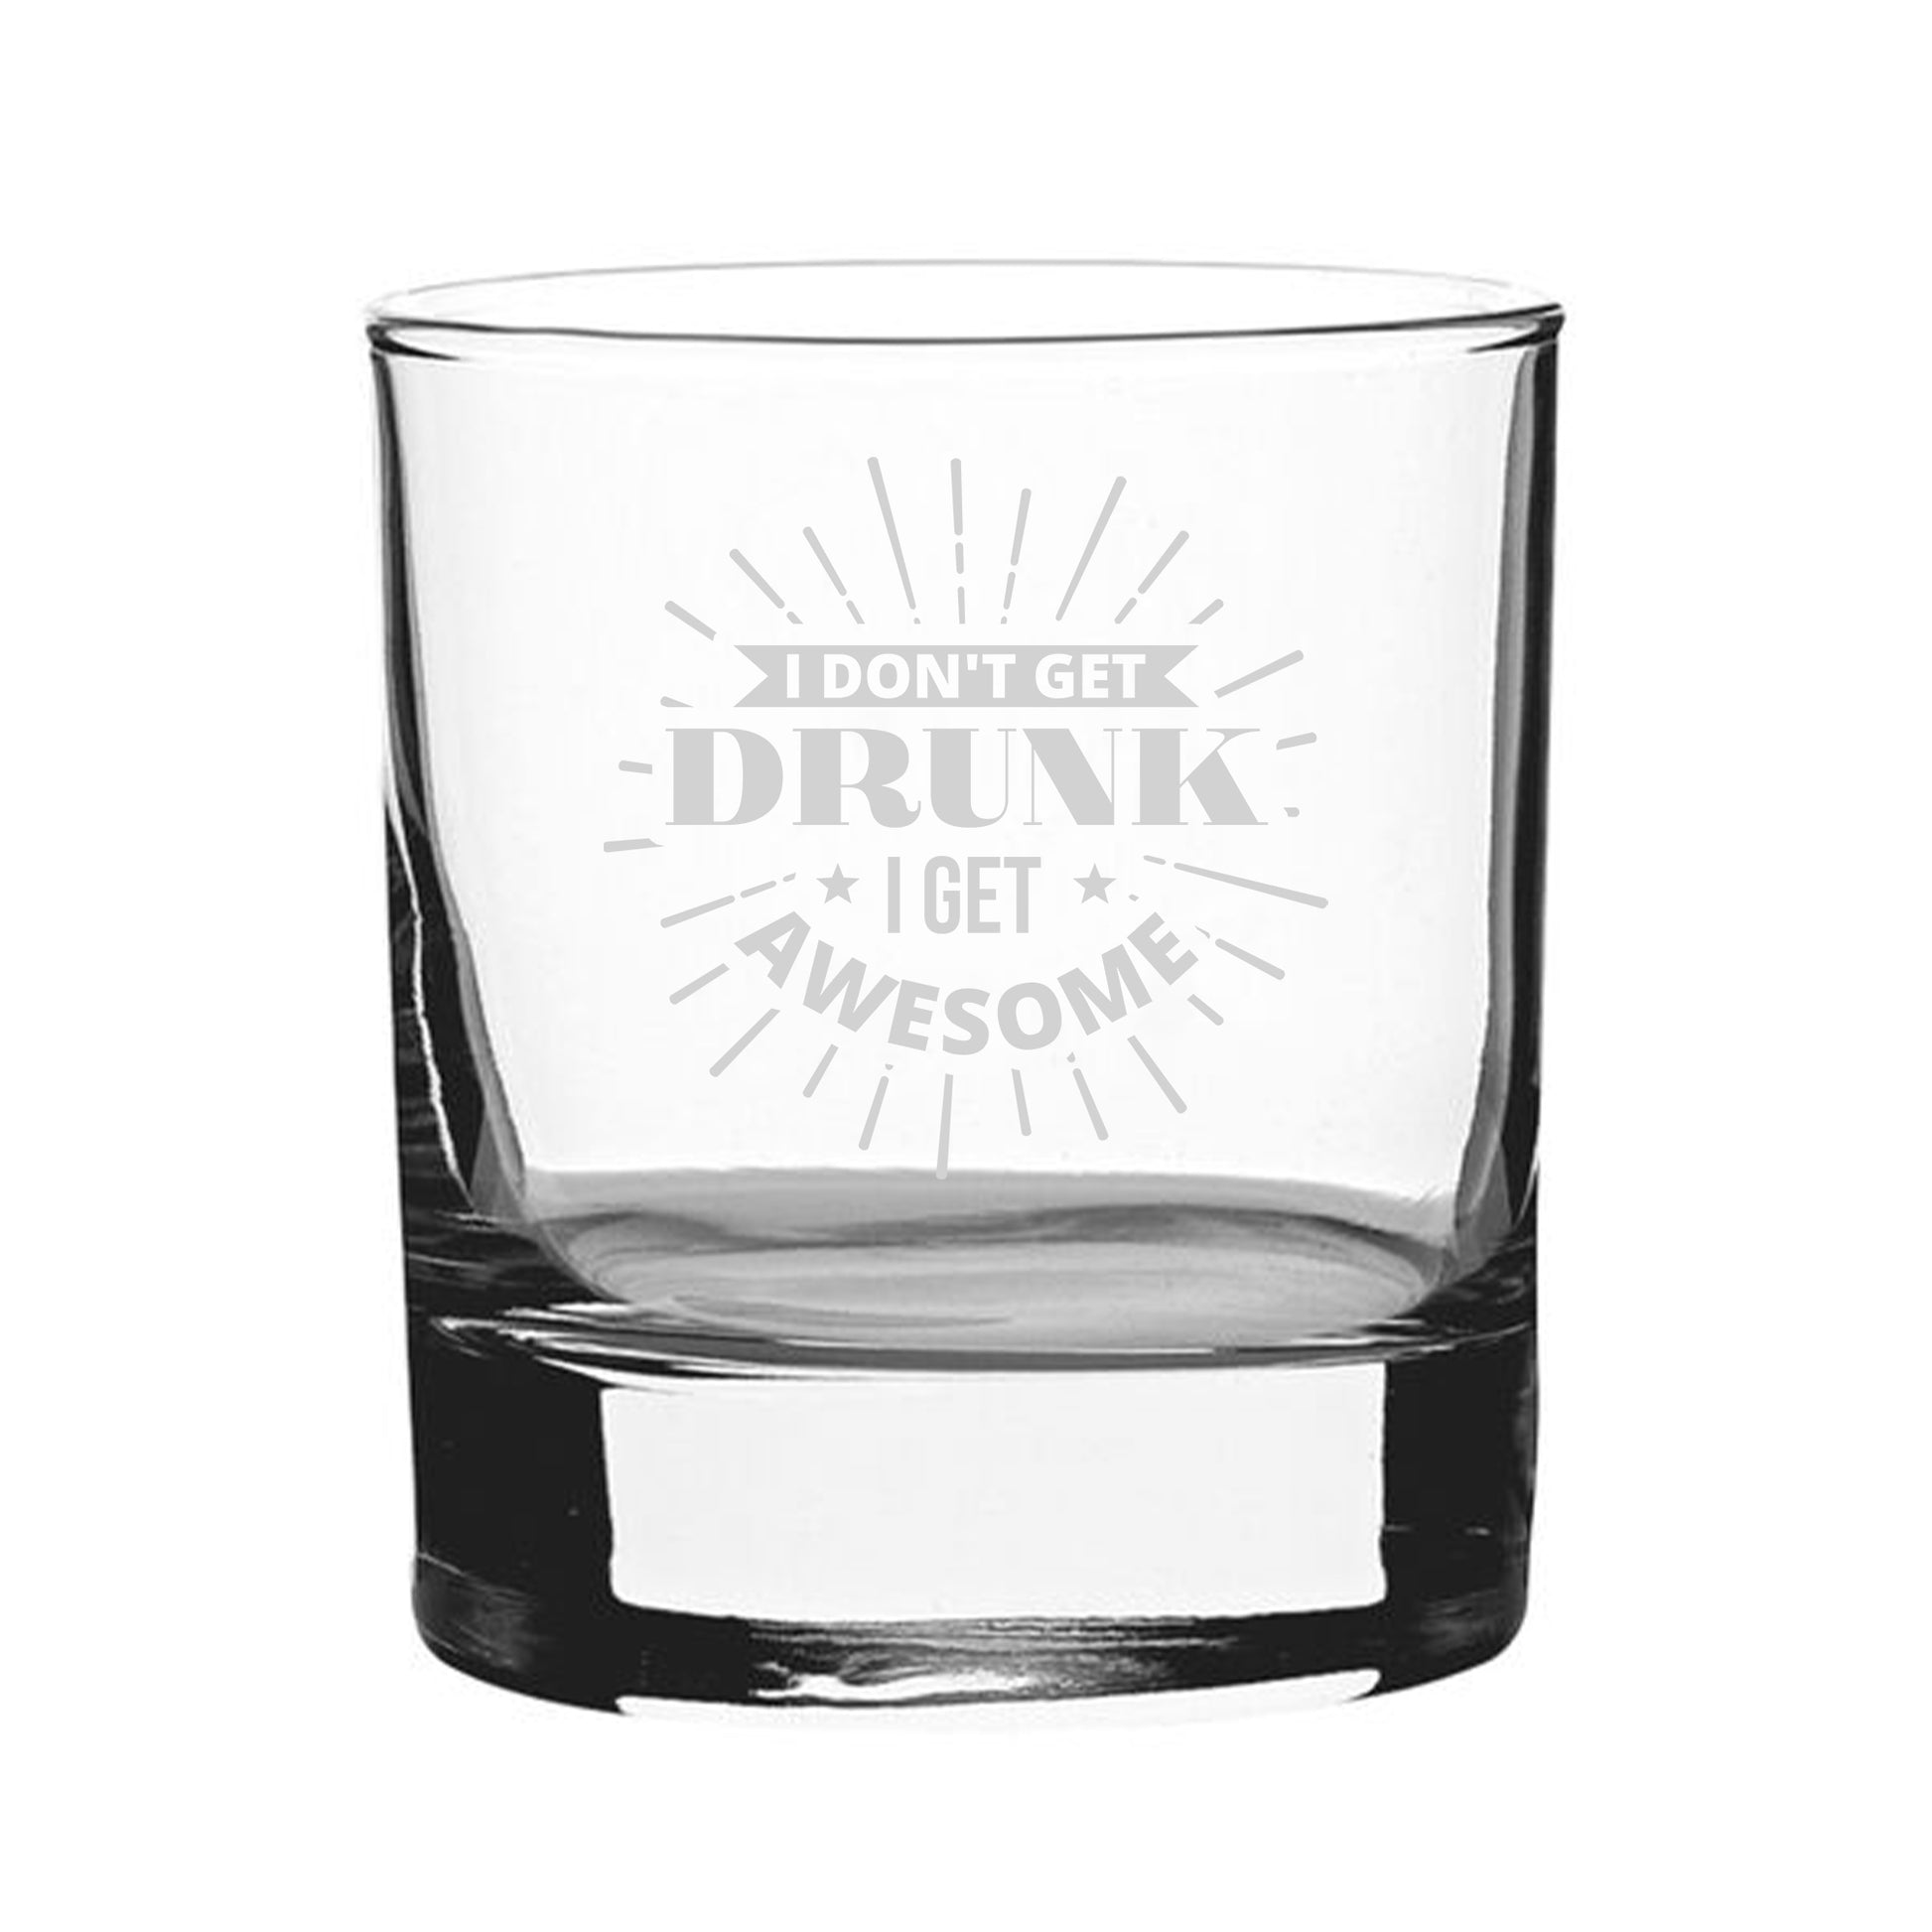 I Don't Get Drunk I Get Awesome - Engraved Novelty Whisky Tumbler Image 2